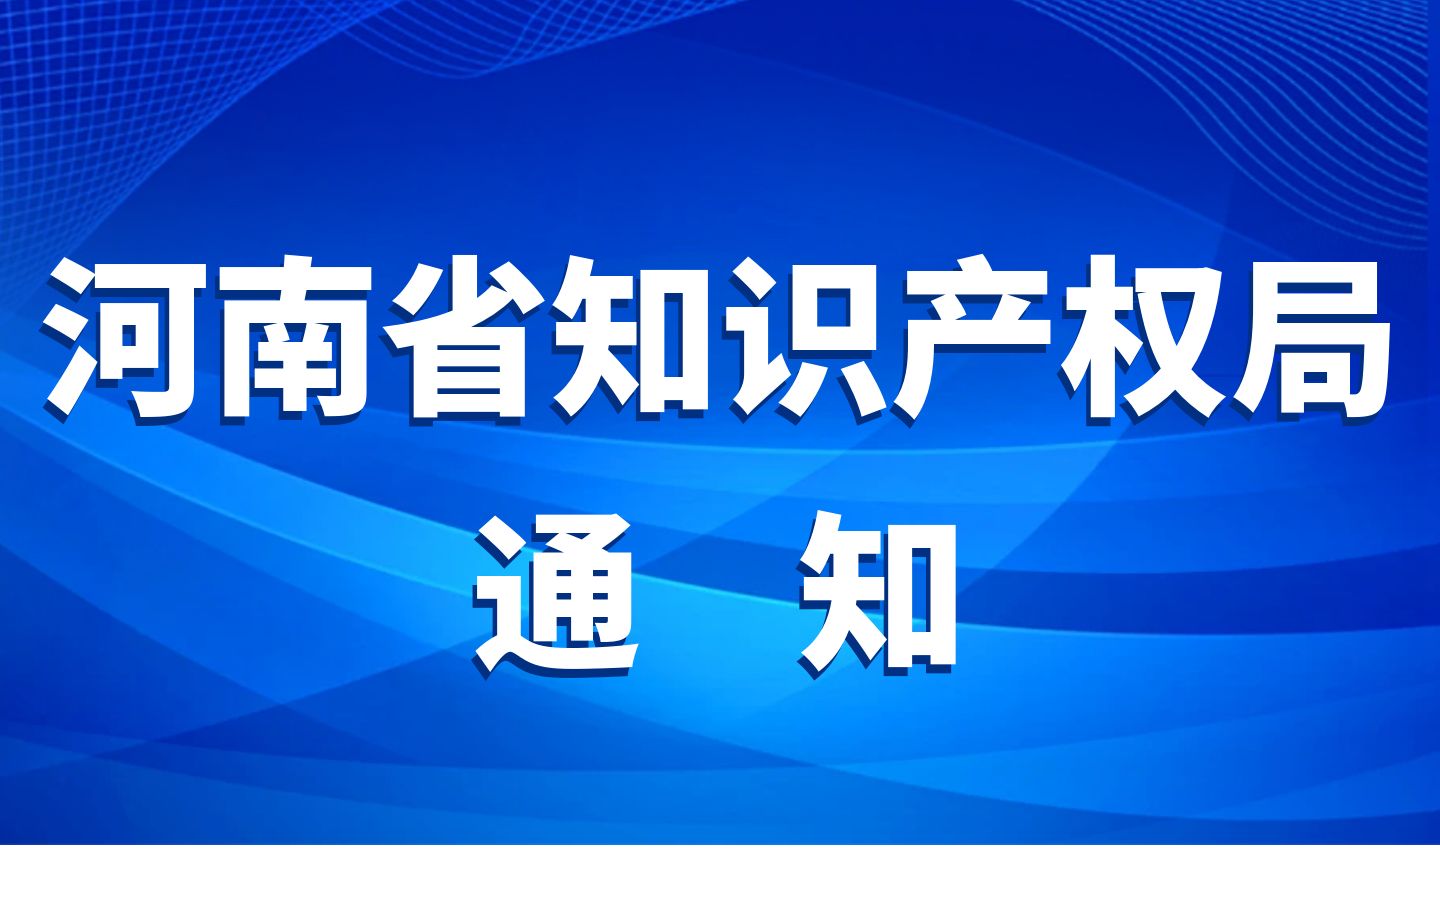 河南5家单位获批首批国家级专利导航服务基地